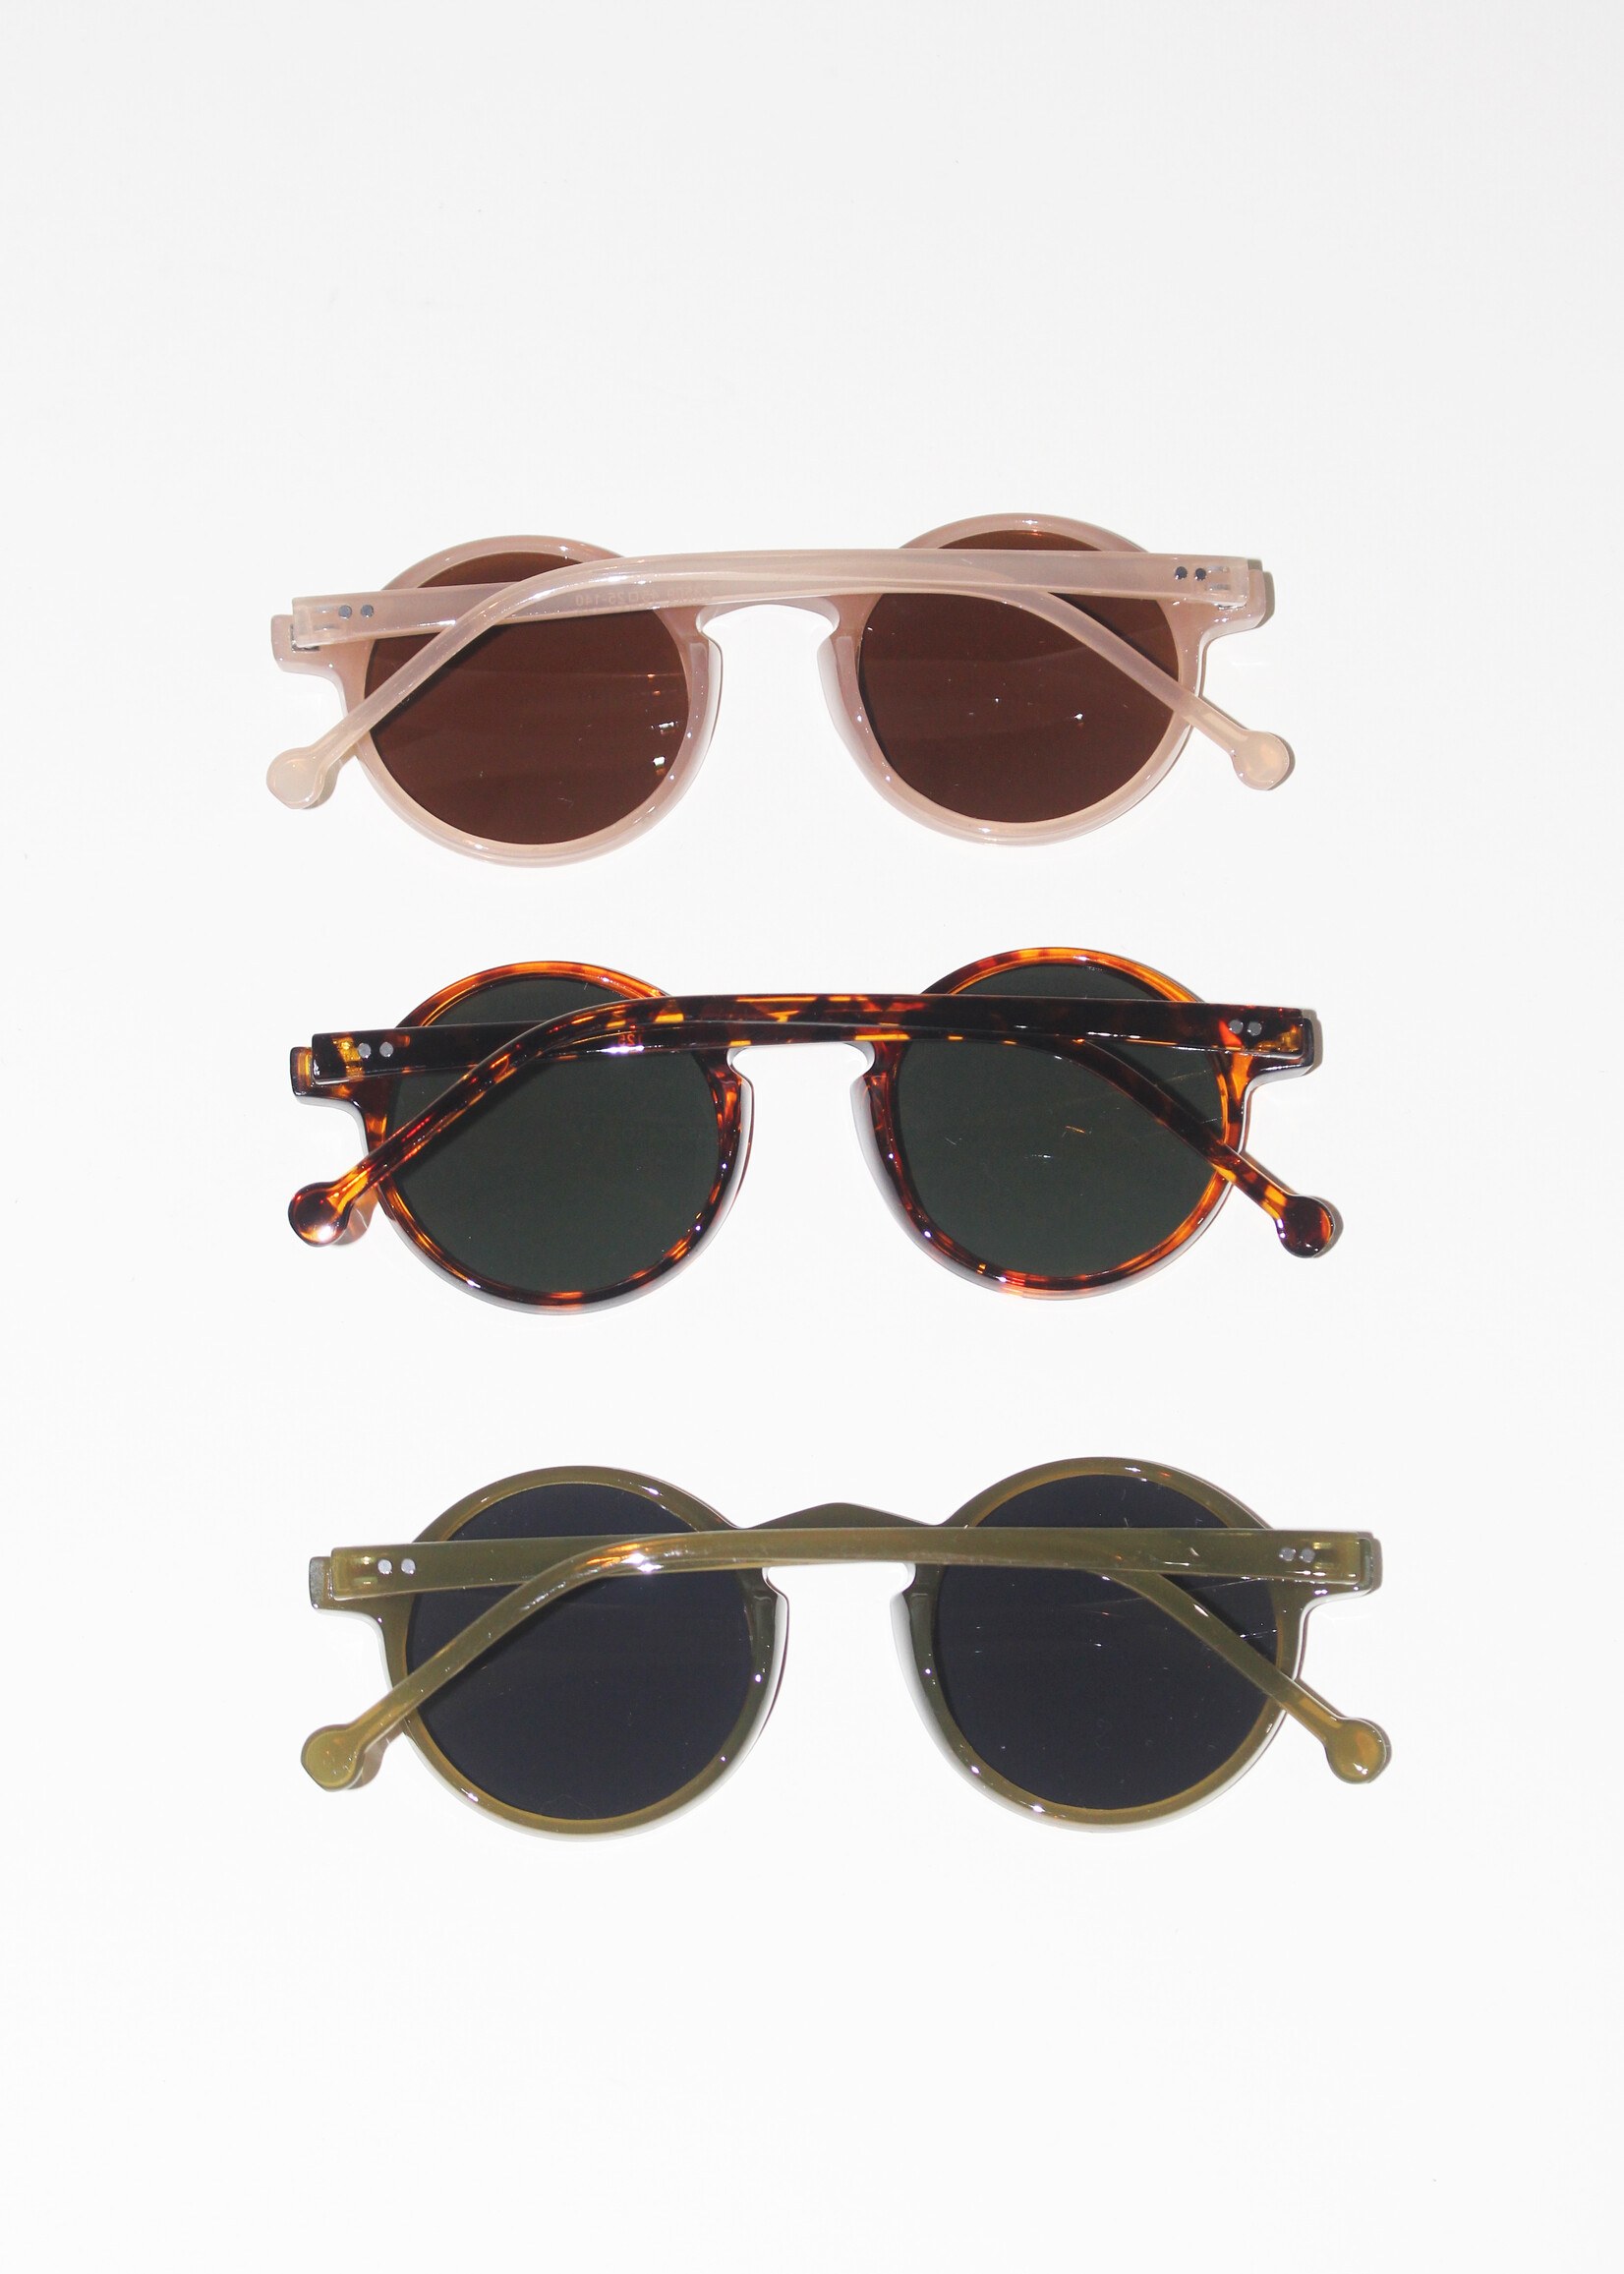 Lapetus Sunglasses